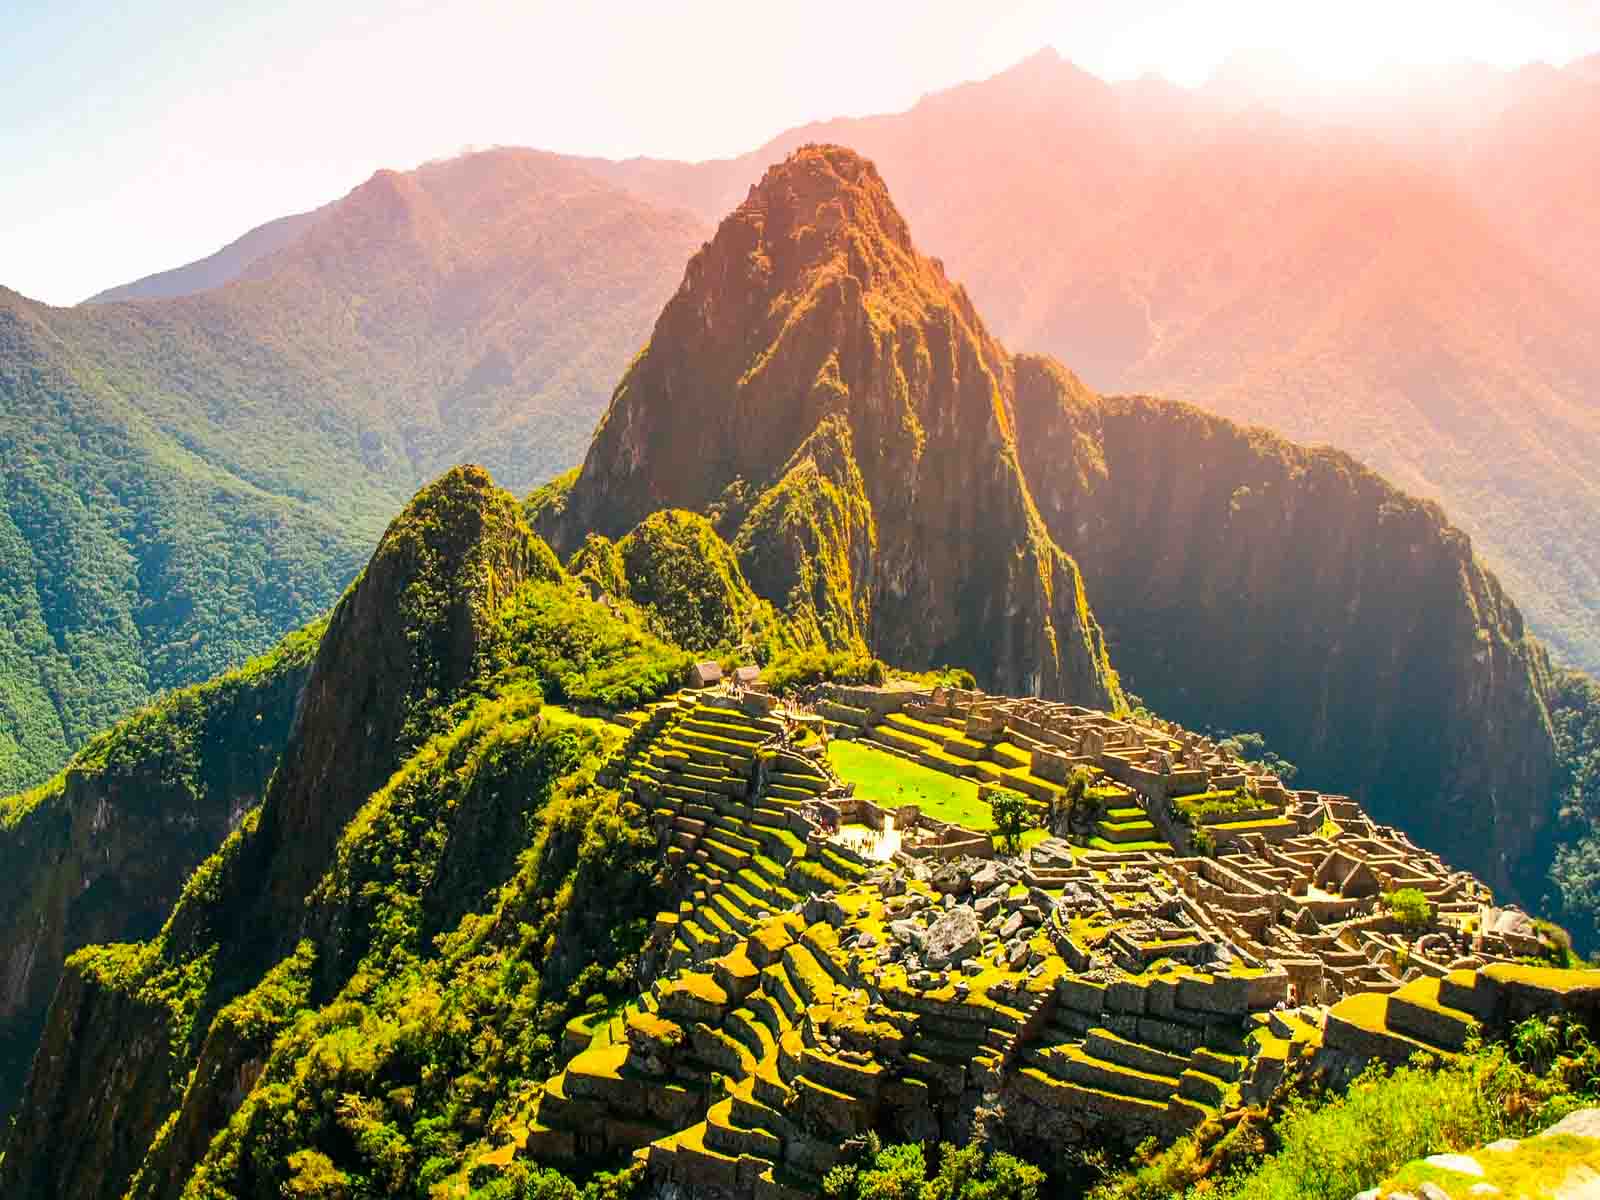  Peru | Peru 6 Day Tour Itinerary Ideas: Discover the Andean Magic